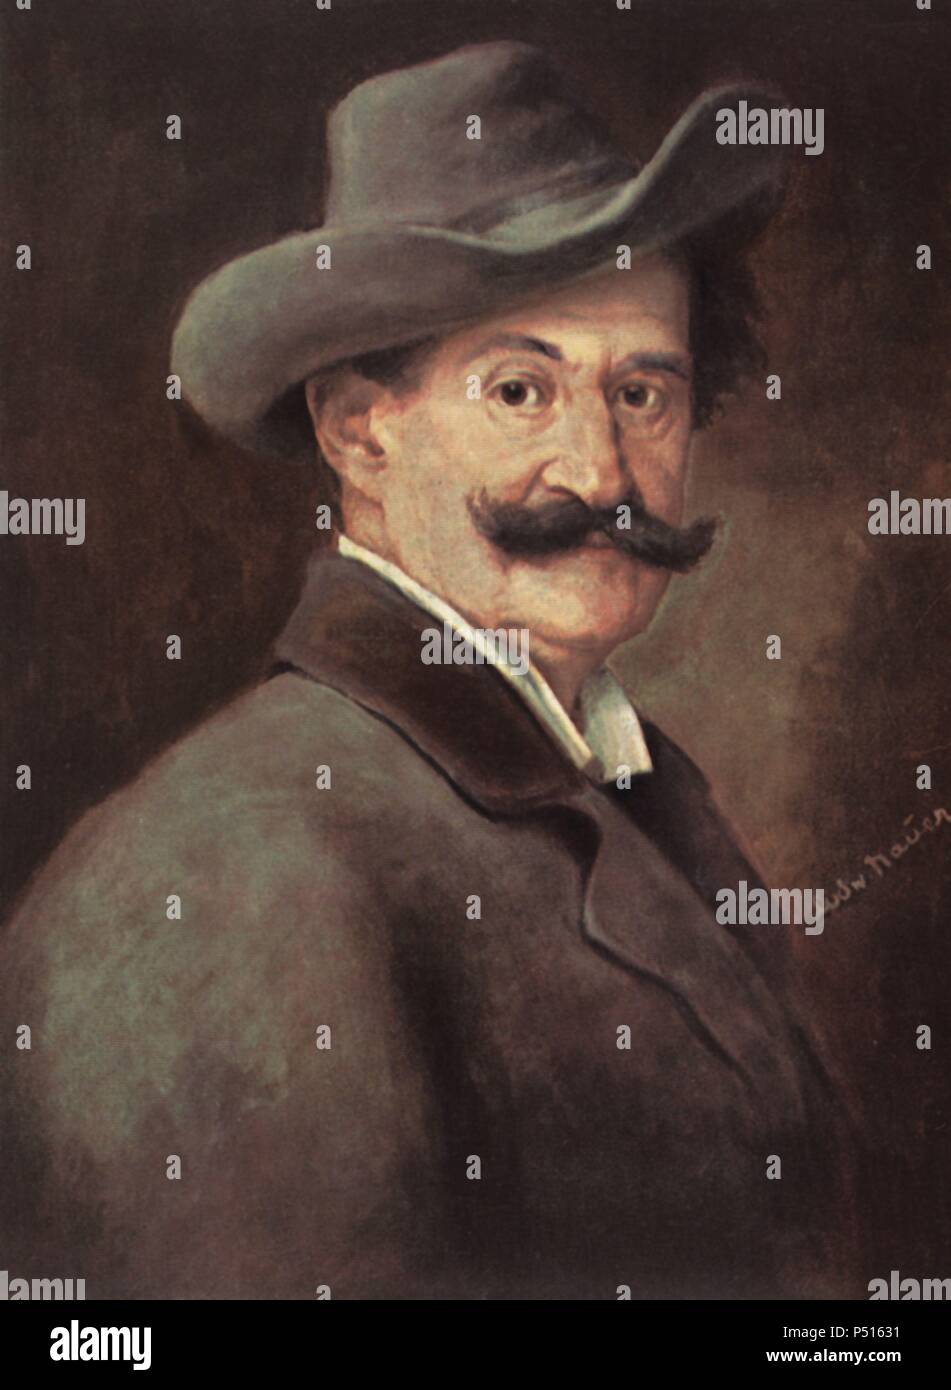 Johann Strauss, hijo (Viena, 1825-1899). Director de orquesta y compositor austríaco, conocido com 'el rey del vals', autor de El Danubio Azul. Stock Photo